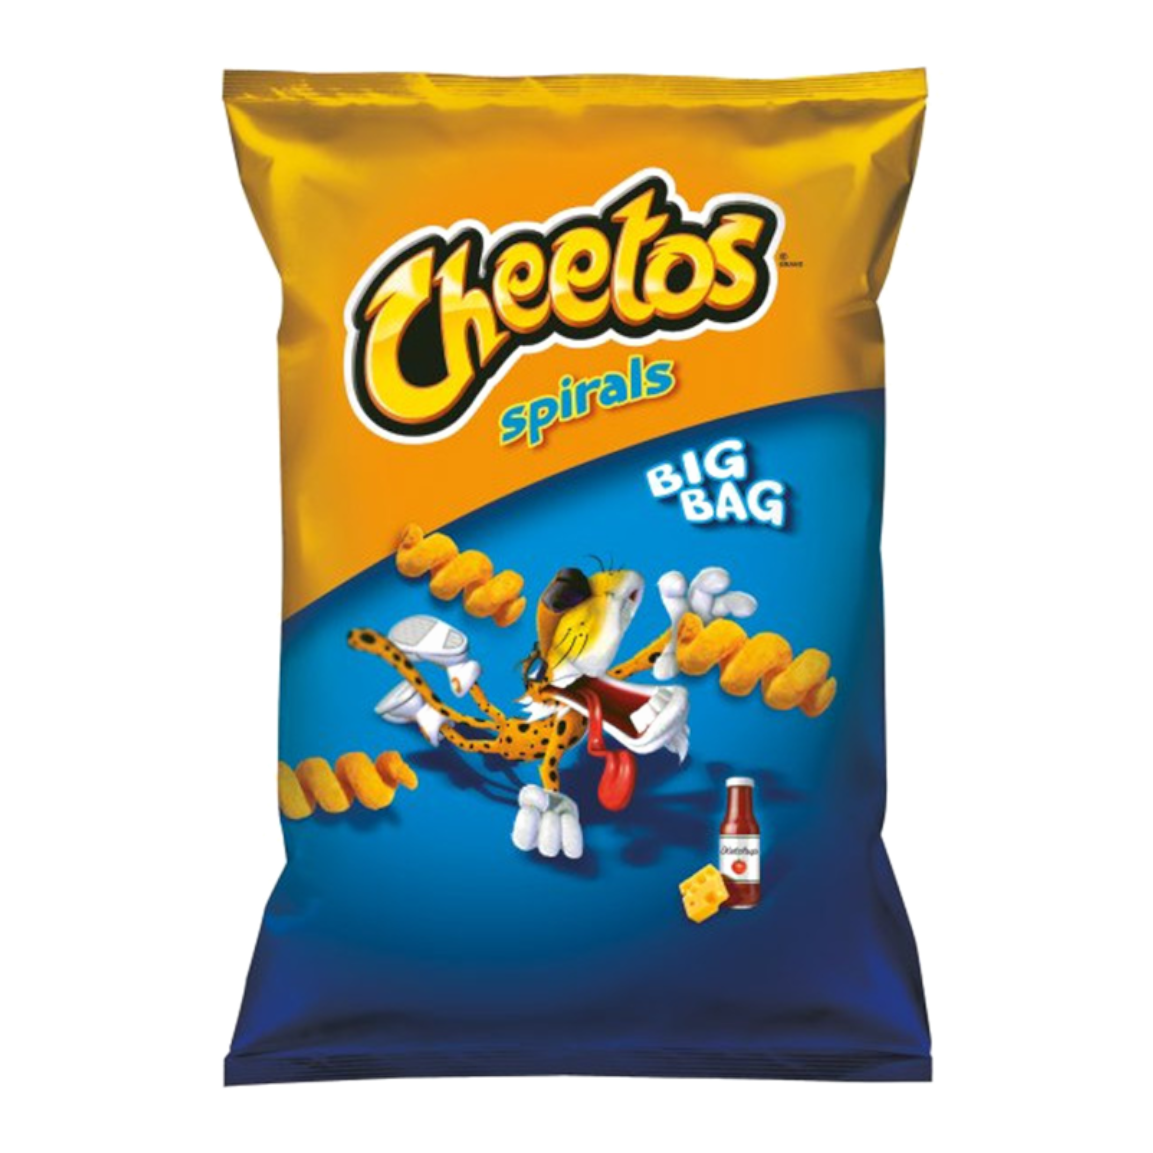 Cheetos Spirals Big Bag PNG